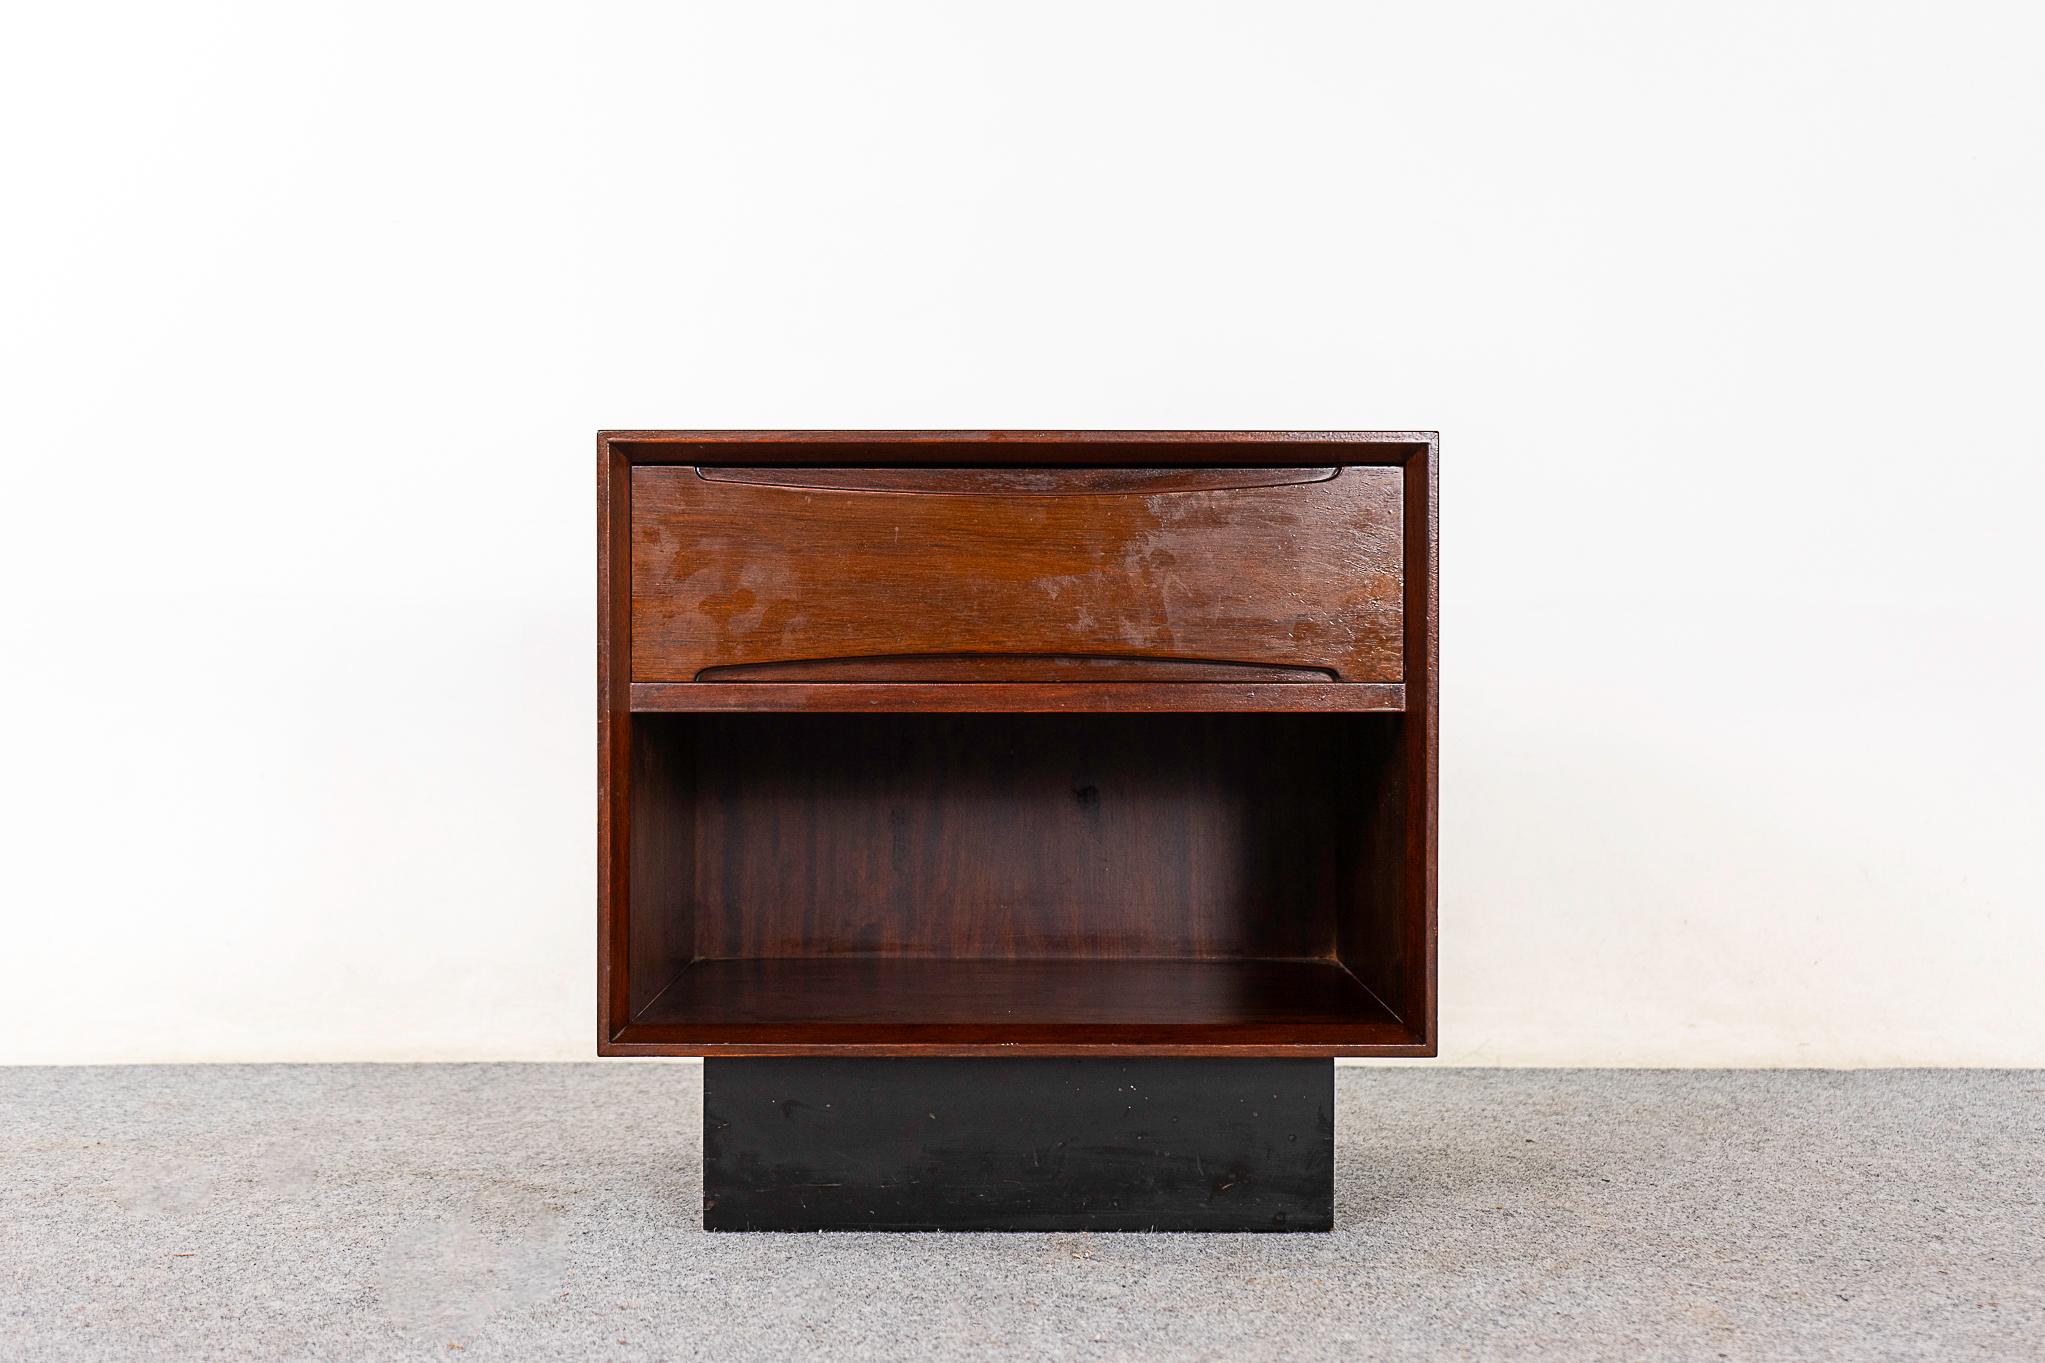 Nachttisch aus Palisanderholz von Drylund, ca. 1960er Jahre. Kompaktes Format mit schwalbenschwanzförmiger Schublade und offenem Staufach.

Unrestauriertes Exemplar mit der Option, es in restauriertem Zustand für einen Aufpreis von 100 USD zu